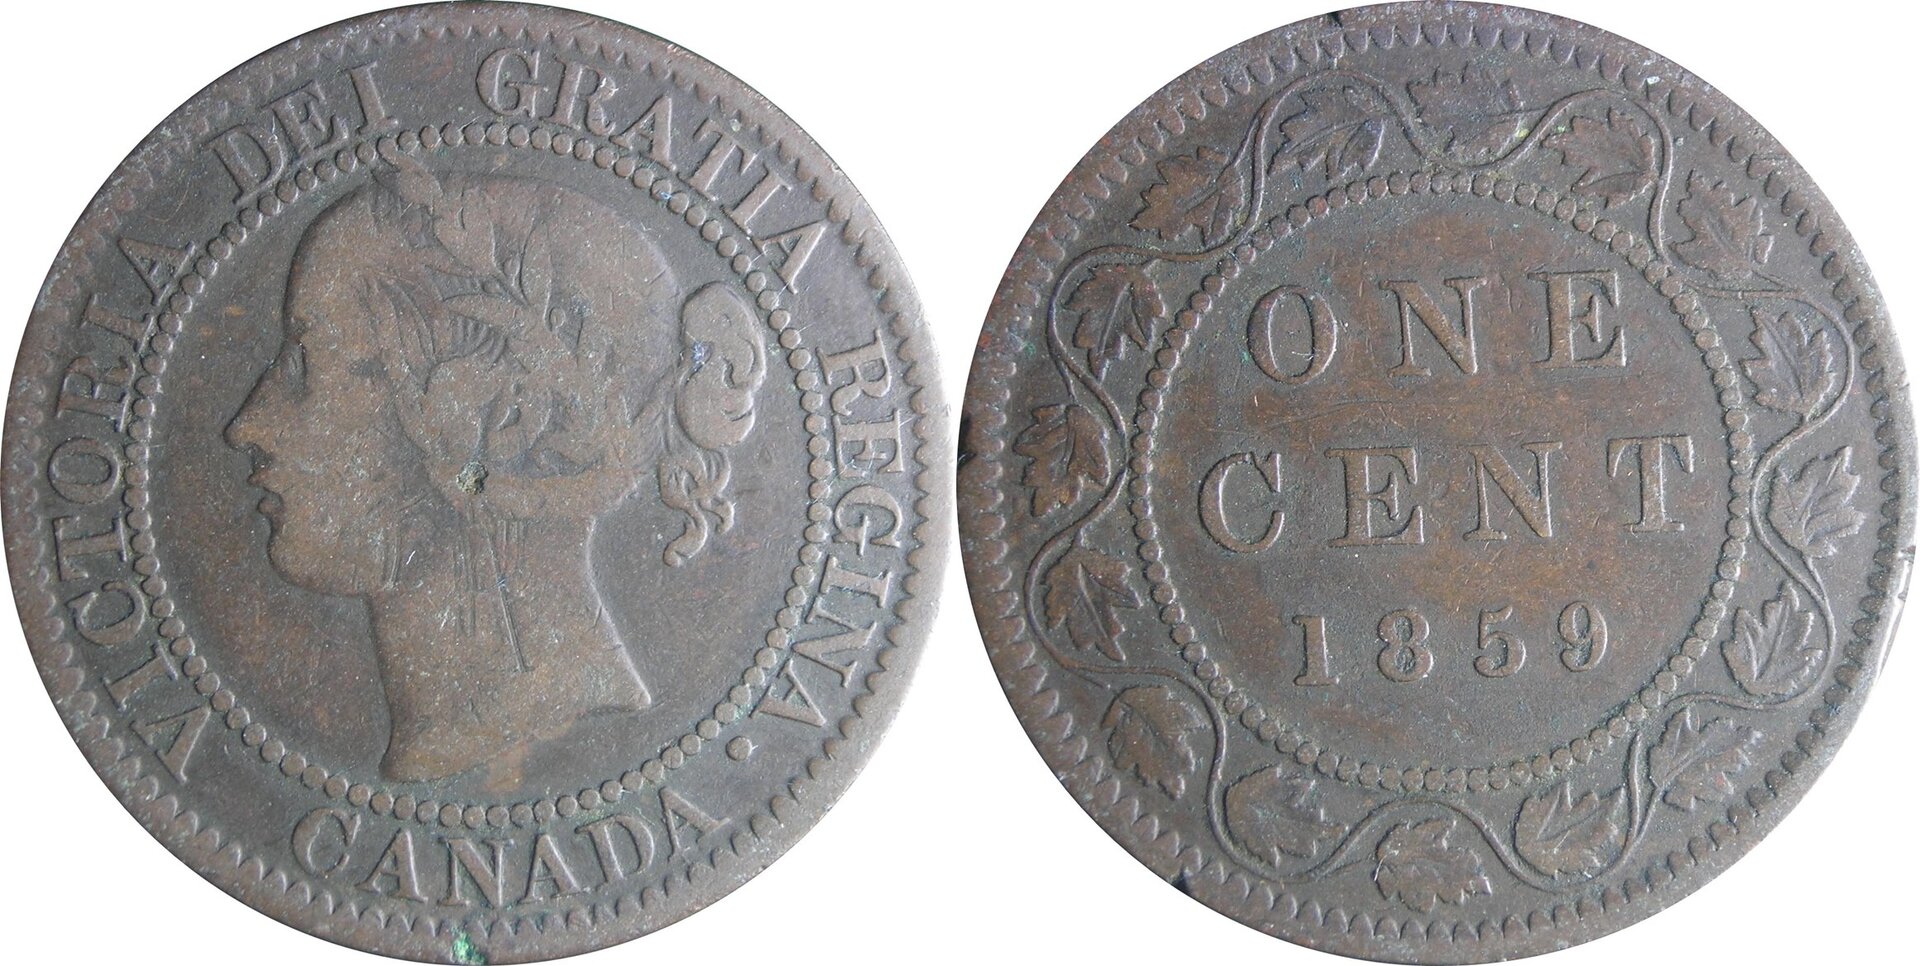 1859 CA 1 c (2).jpg